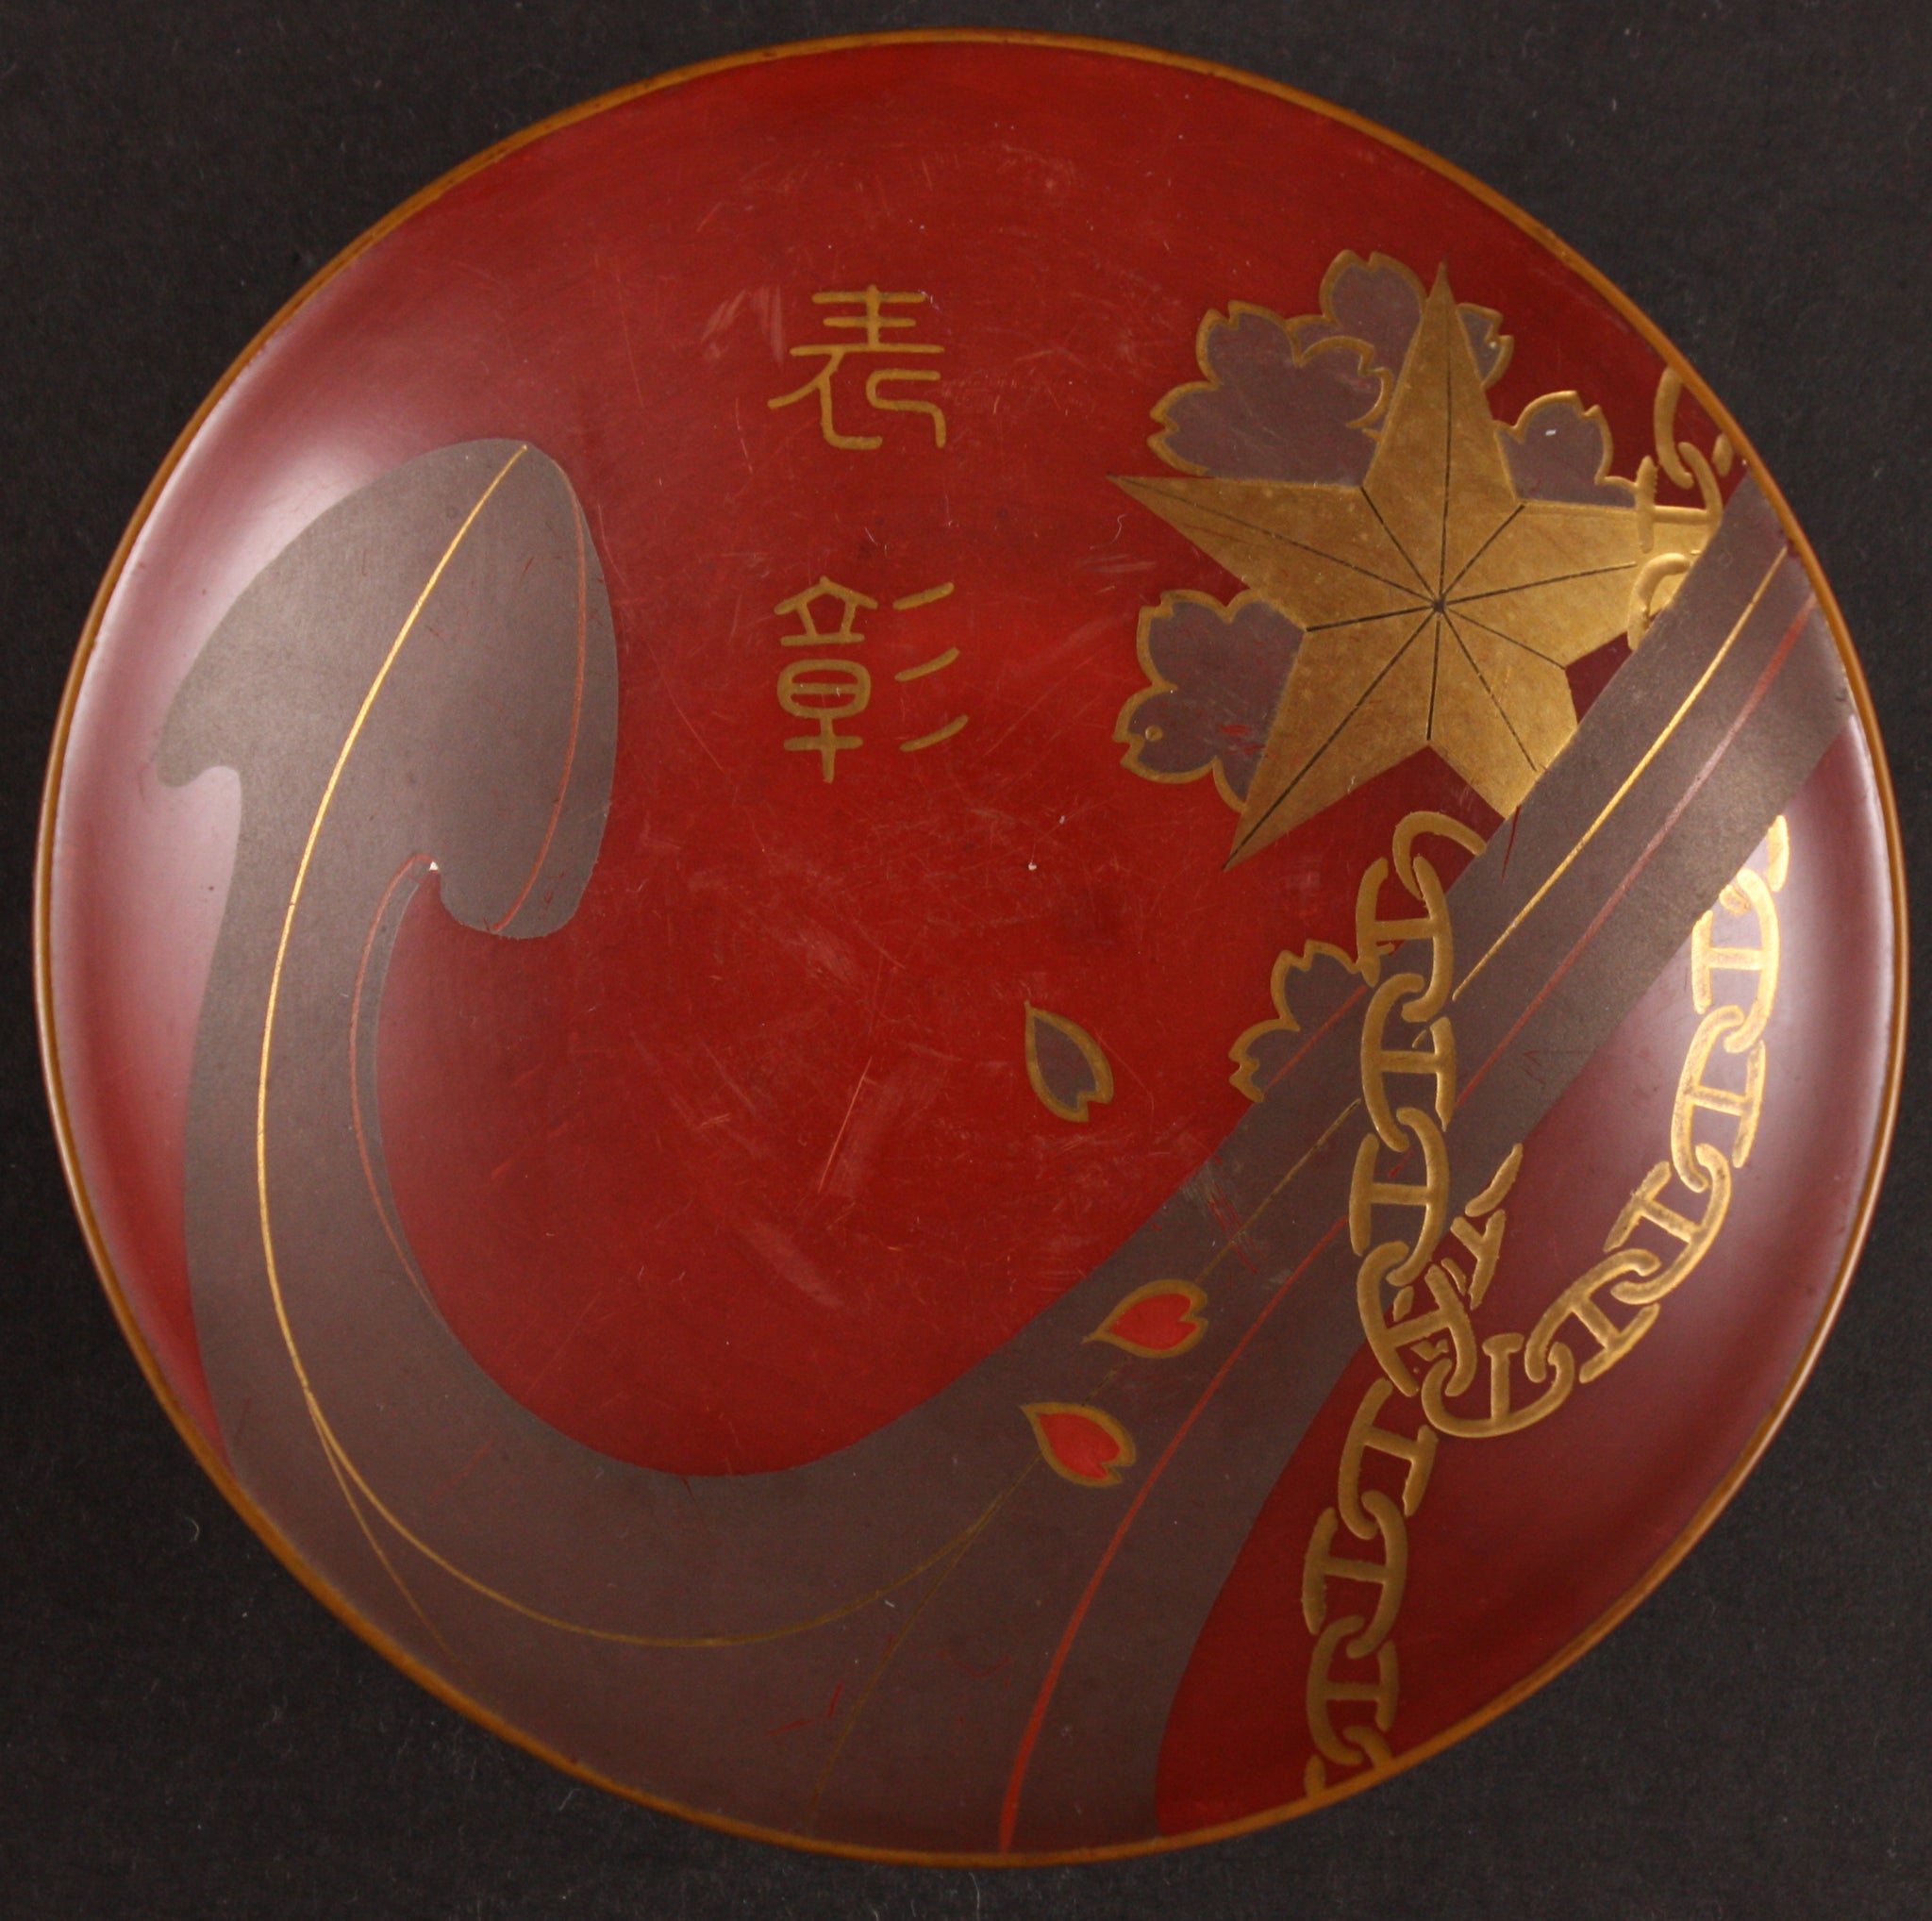 Antique Japanese Military Anchor Star Shobukai Award Lacquer Sake Cup